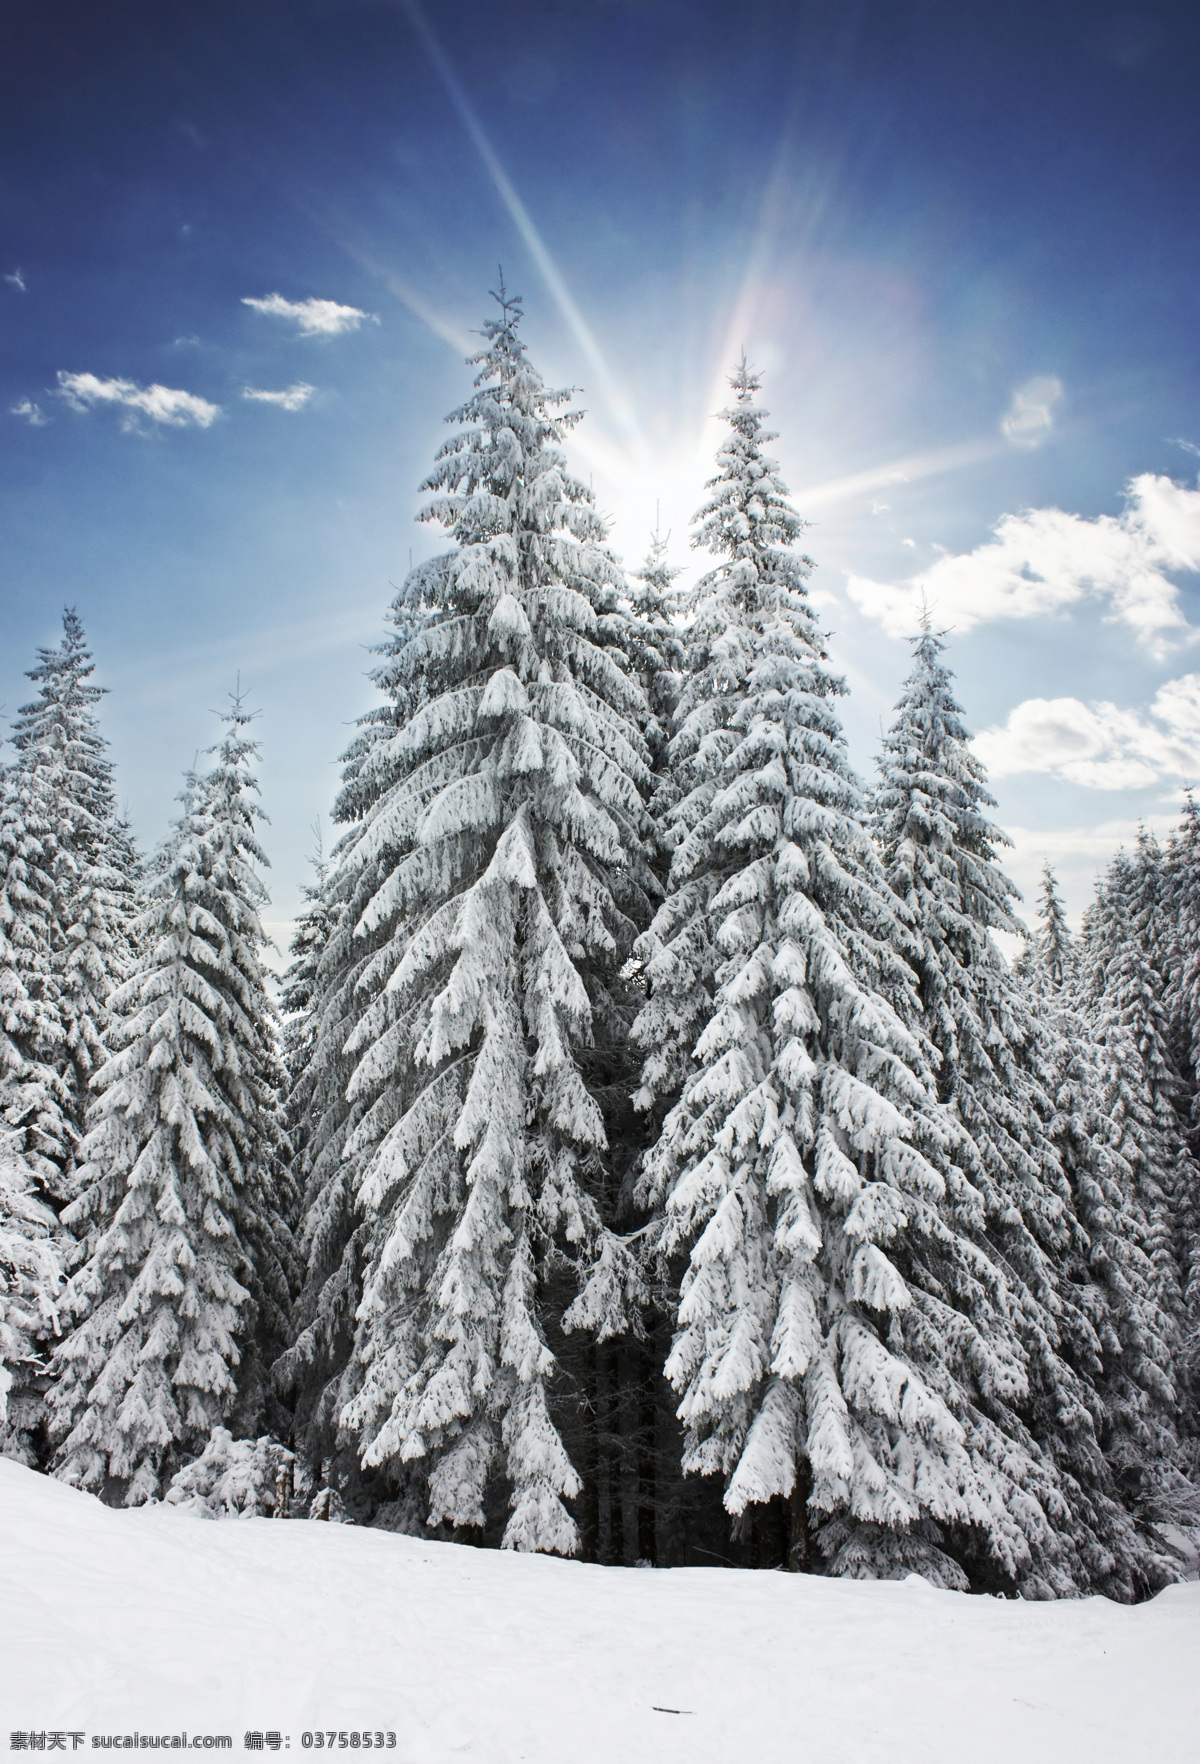 美丽冬天雪景 圣诞节 冬天 冬季 雪景 美丽风景 树林 森林 白雪 自然风景 自然景观 白色